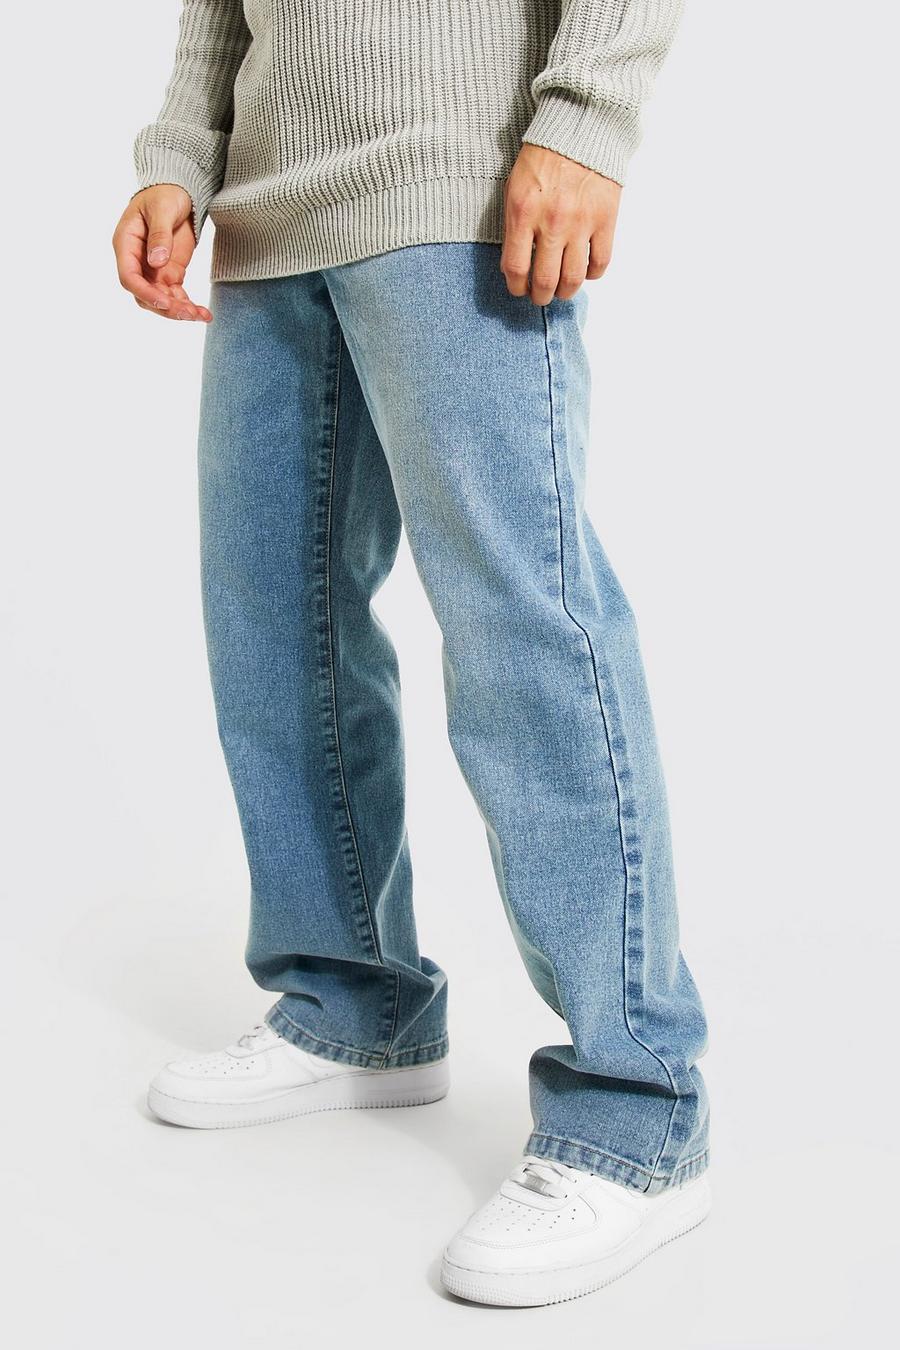 כחול בהיר מכנסי ג'ינס מתרחבים מבד קשיח בגזרה משוחררת